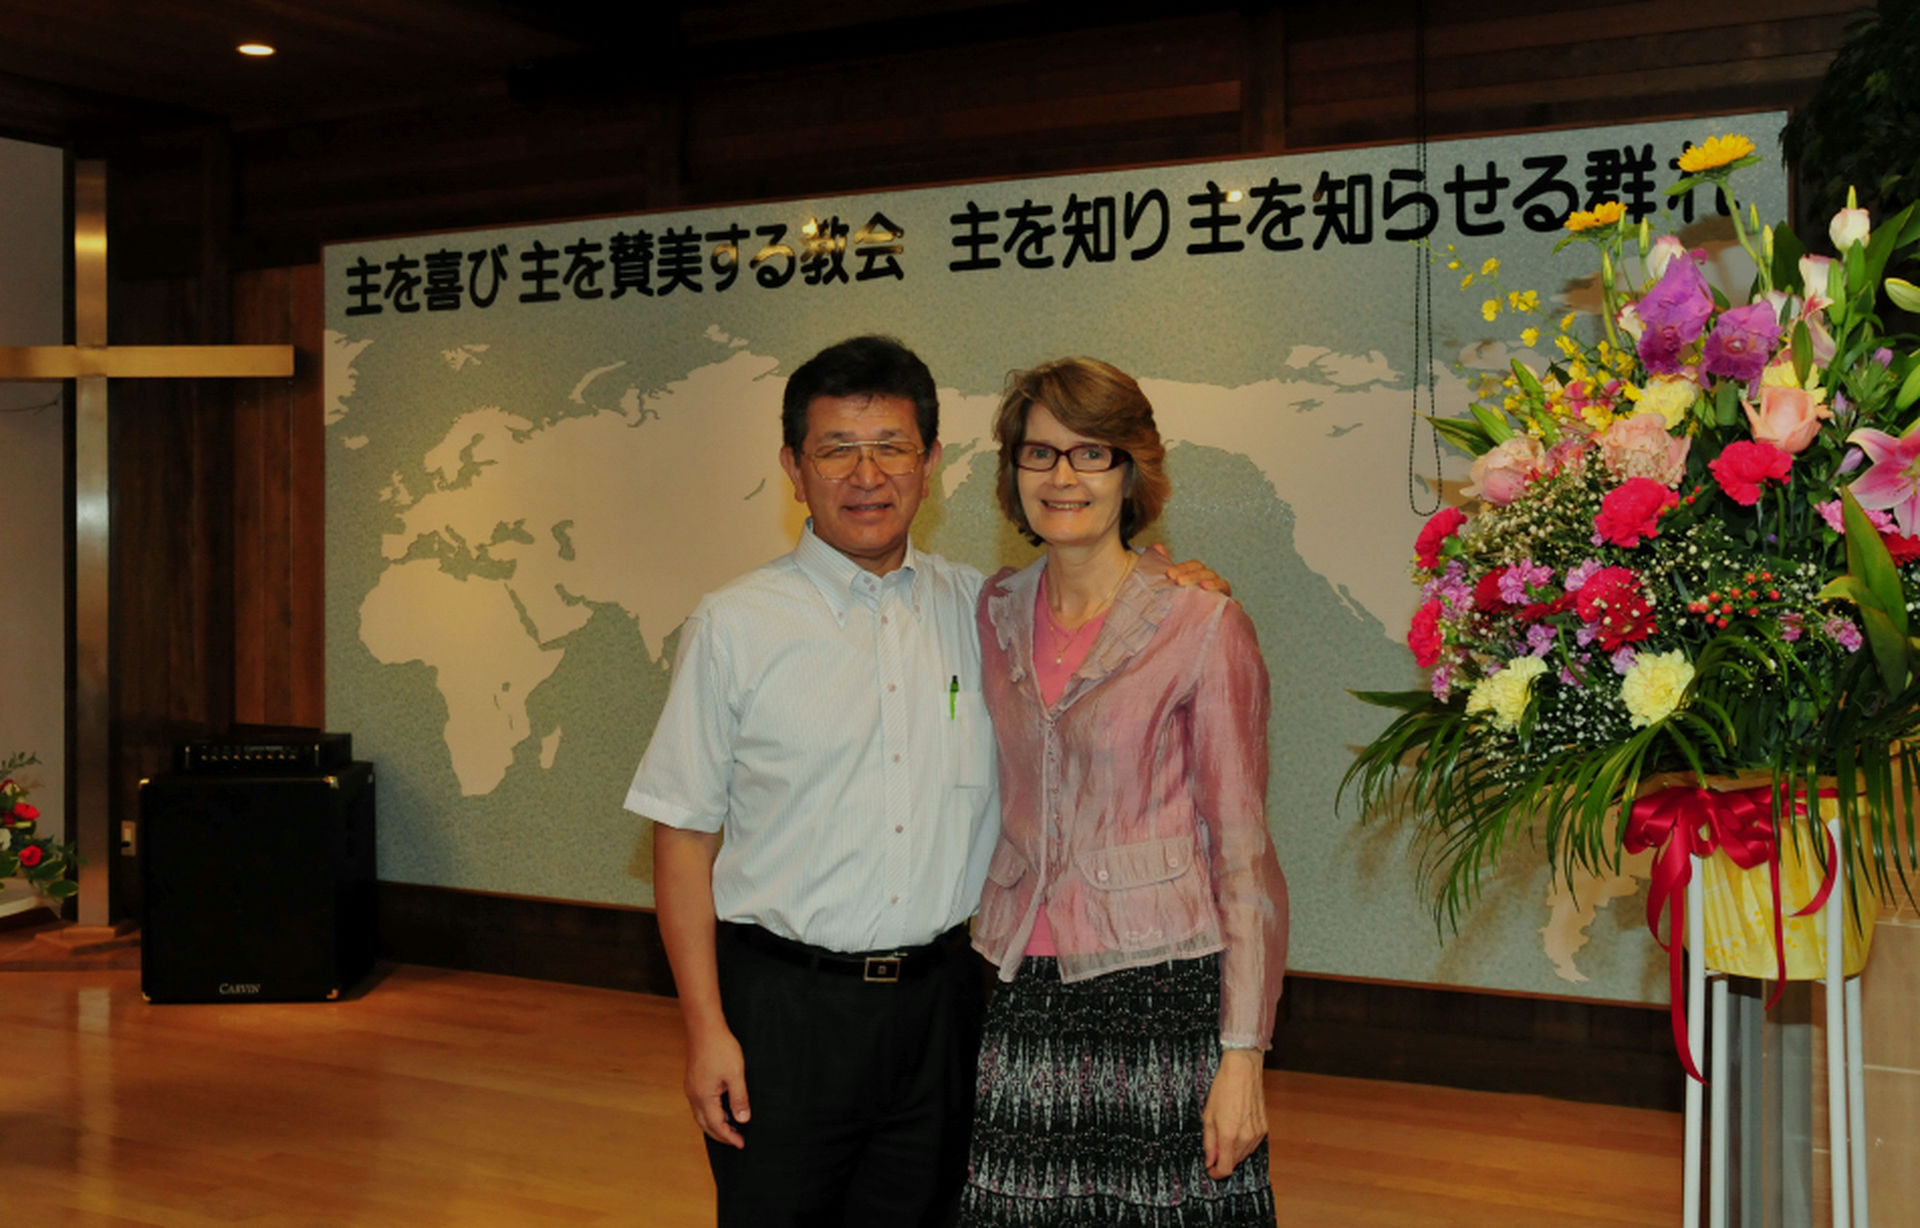 Våre misjonærer i Japan